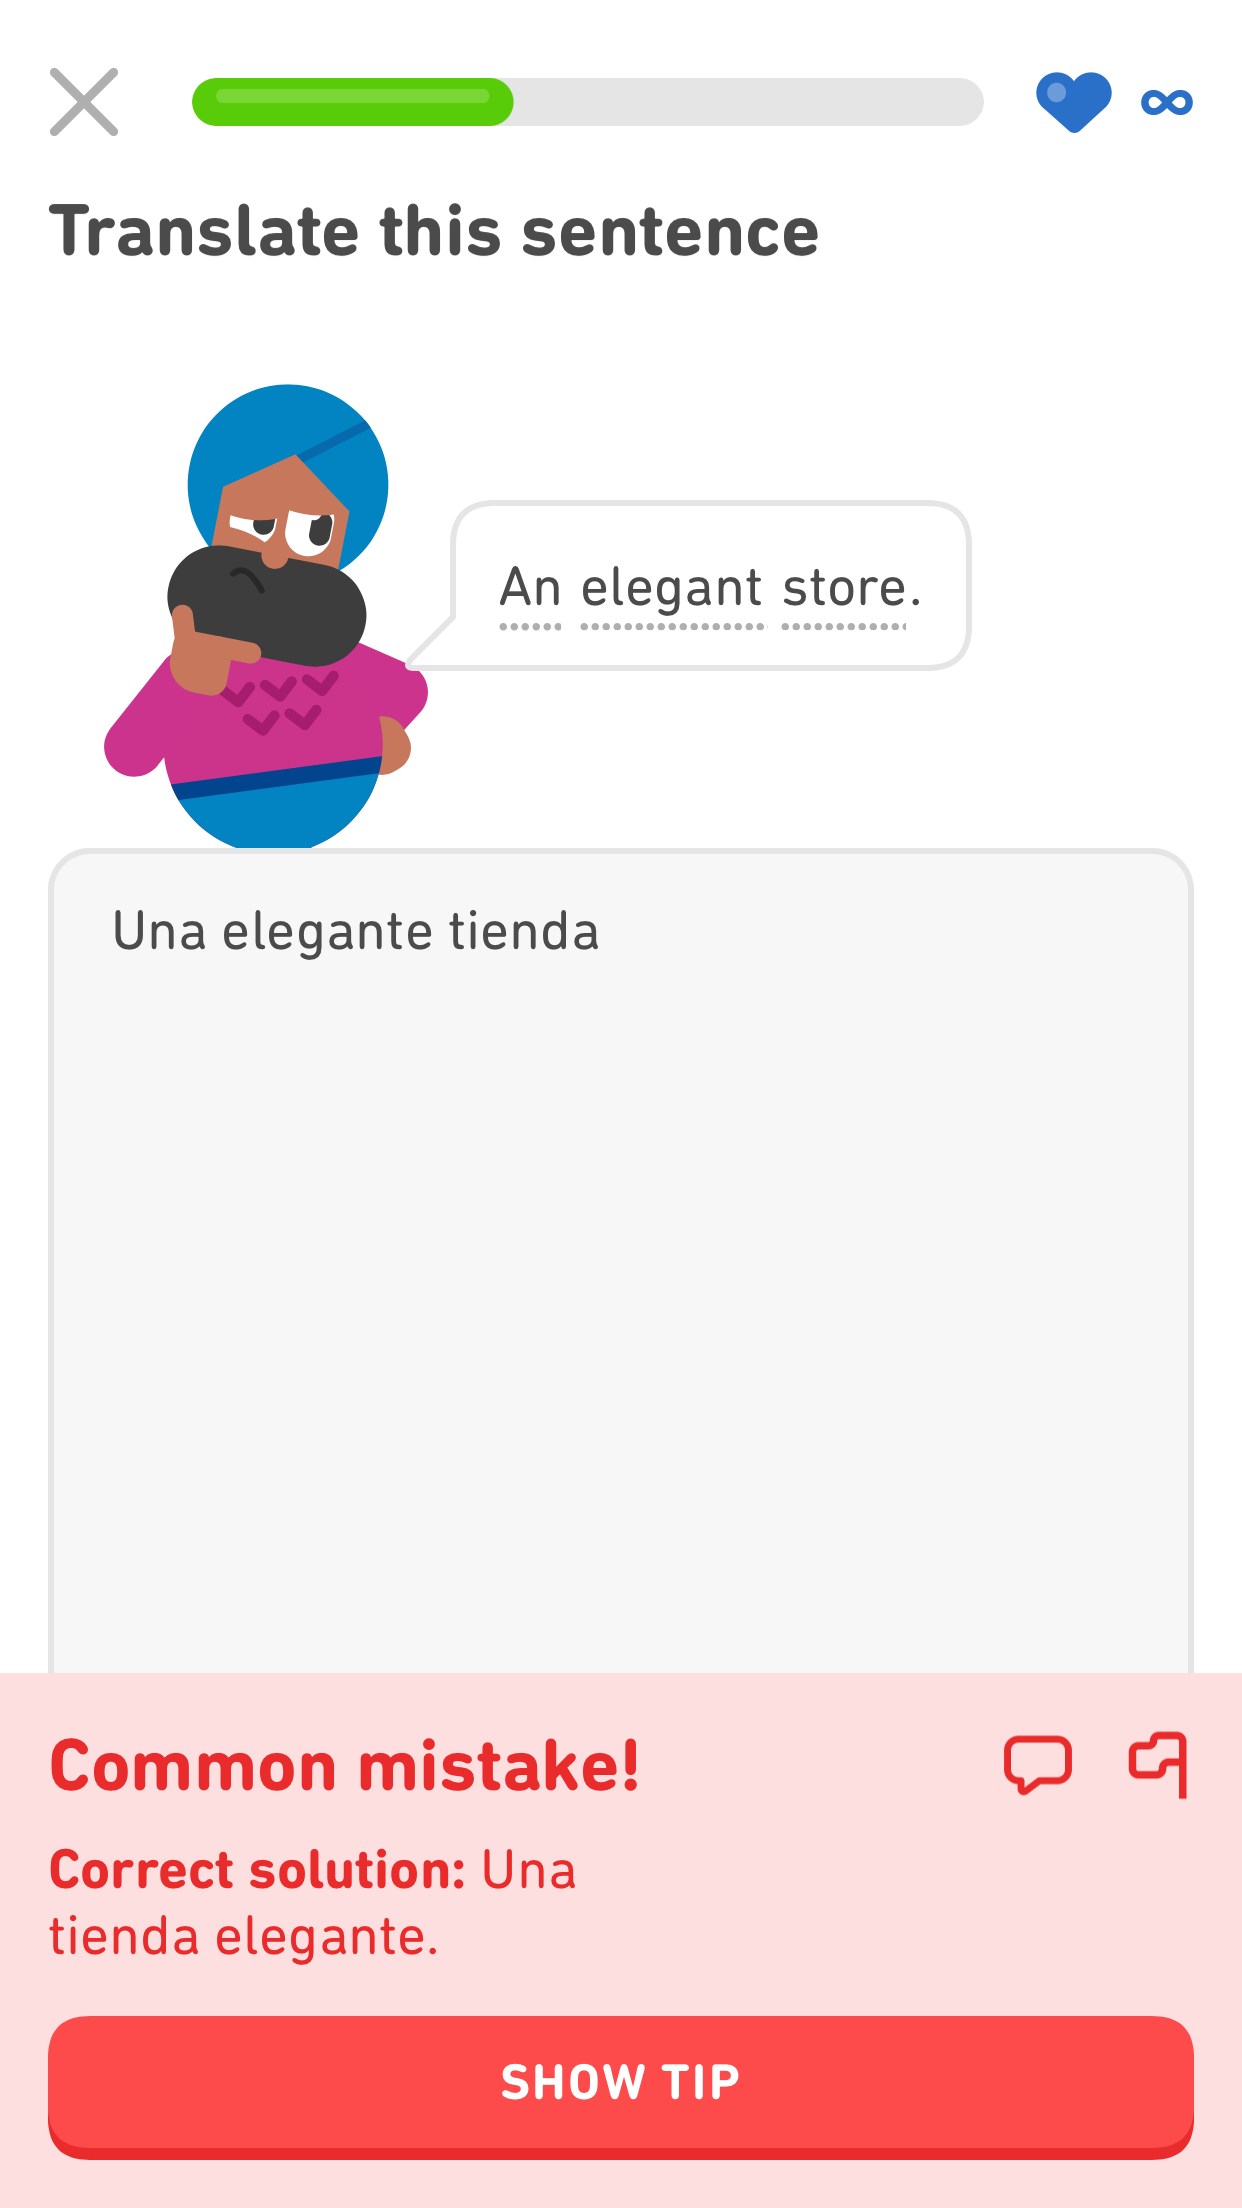 Captura de pantalla de un ejercicio de Duolingo eb inglés donde el personaje Vikram dice “una tienda elegante” en inglés. La traducción ingresada es “una elegante tienda”. El mensaje de corrección en la parte inferior dice “¡Es un error común!” y muestra la solución correcta con el sustantivo y el adjetivo invertidos: “Una tienda elegante”.